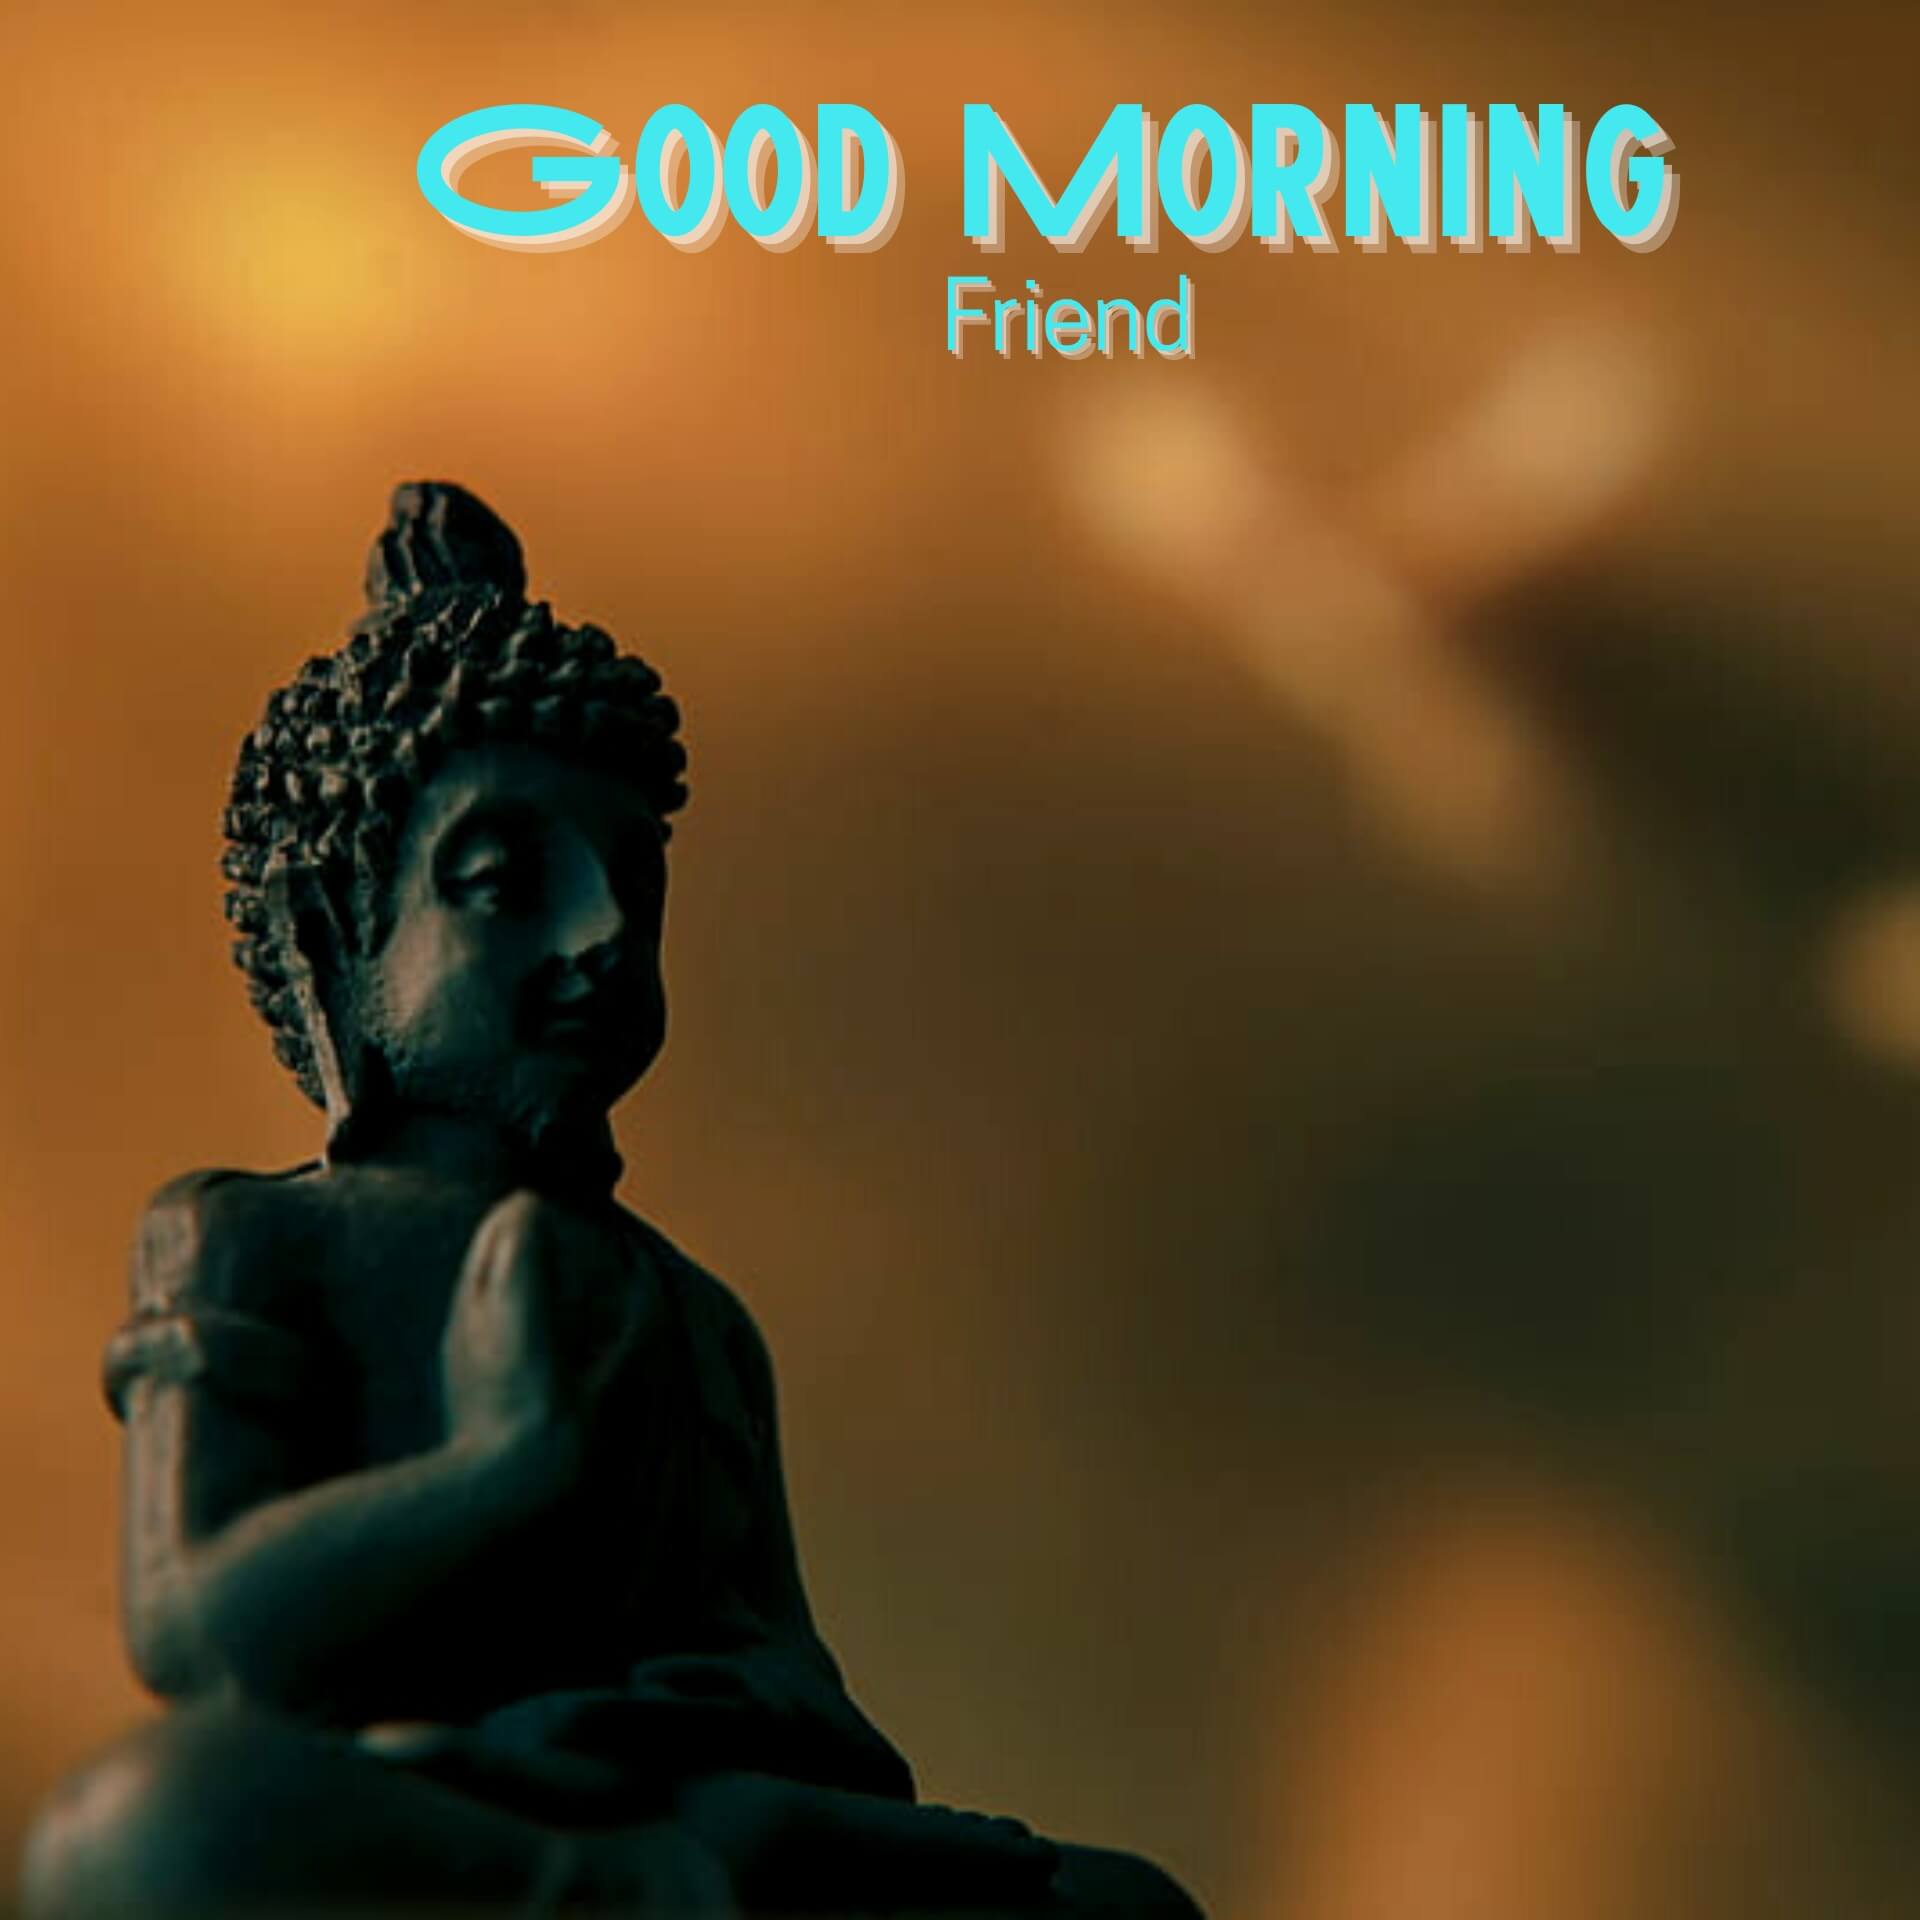 Gautam Buddha Good Morning Images Download